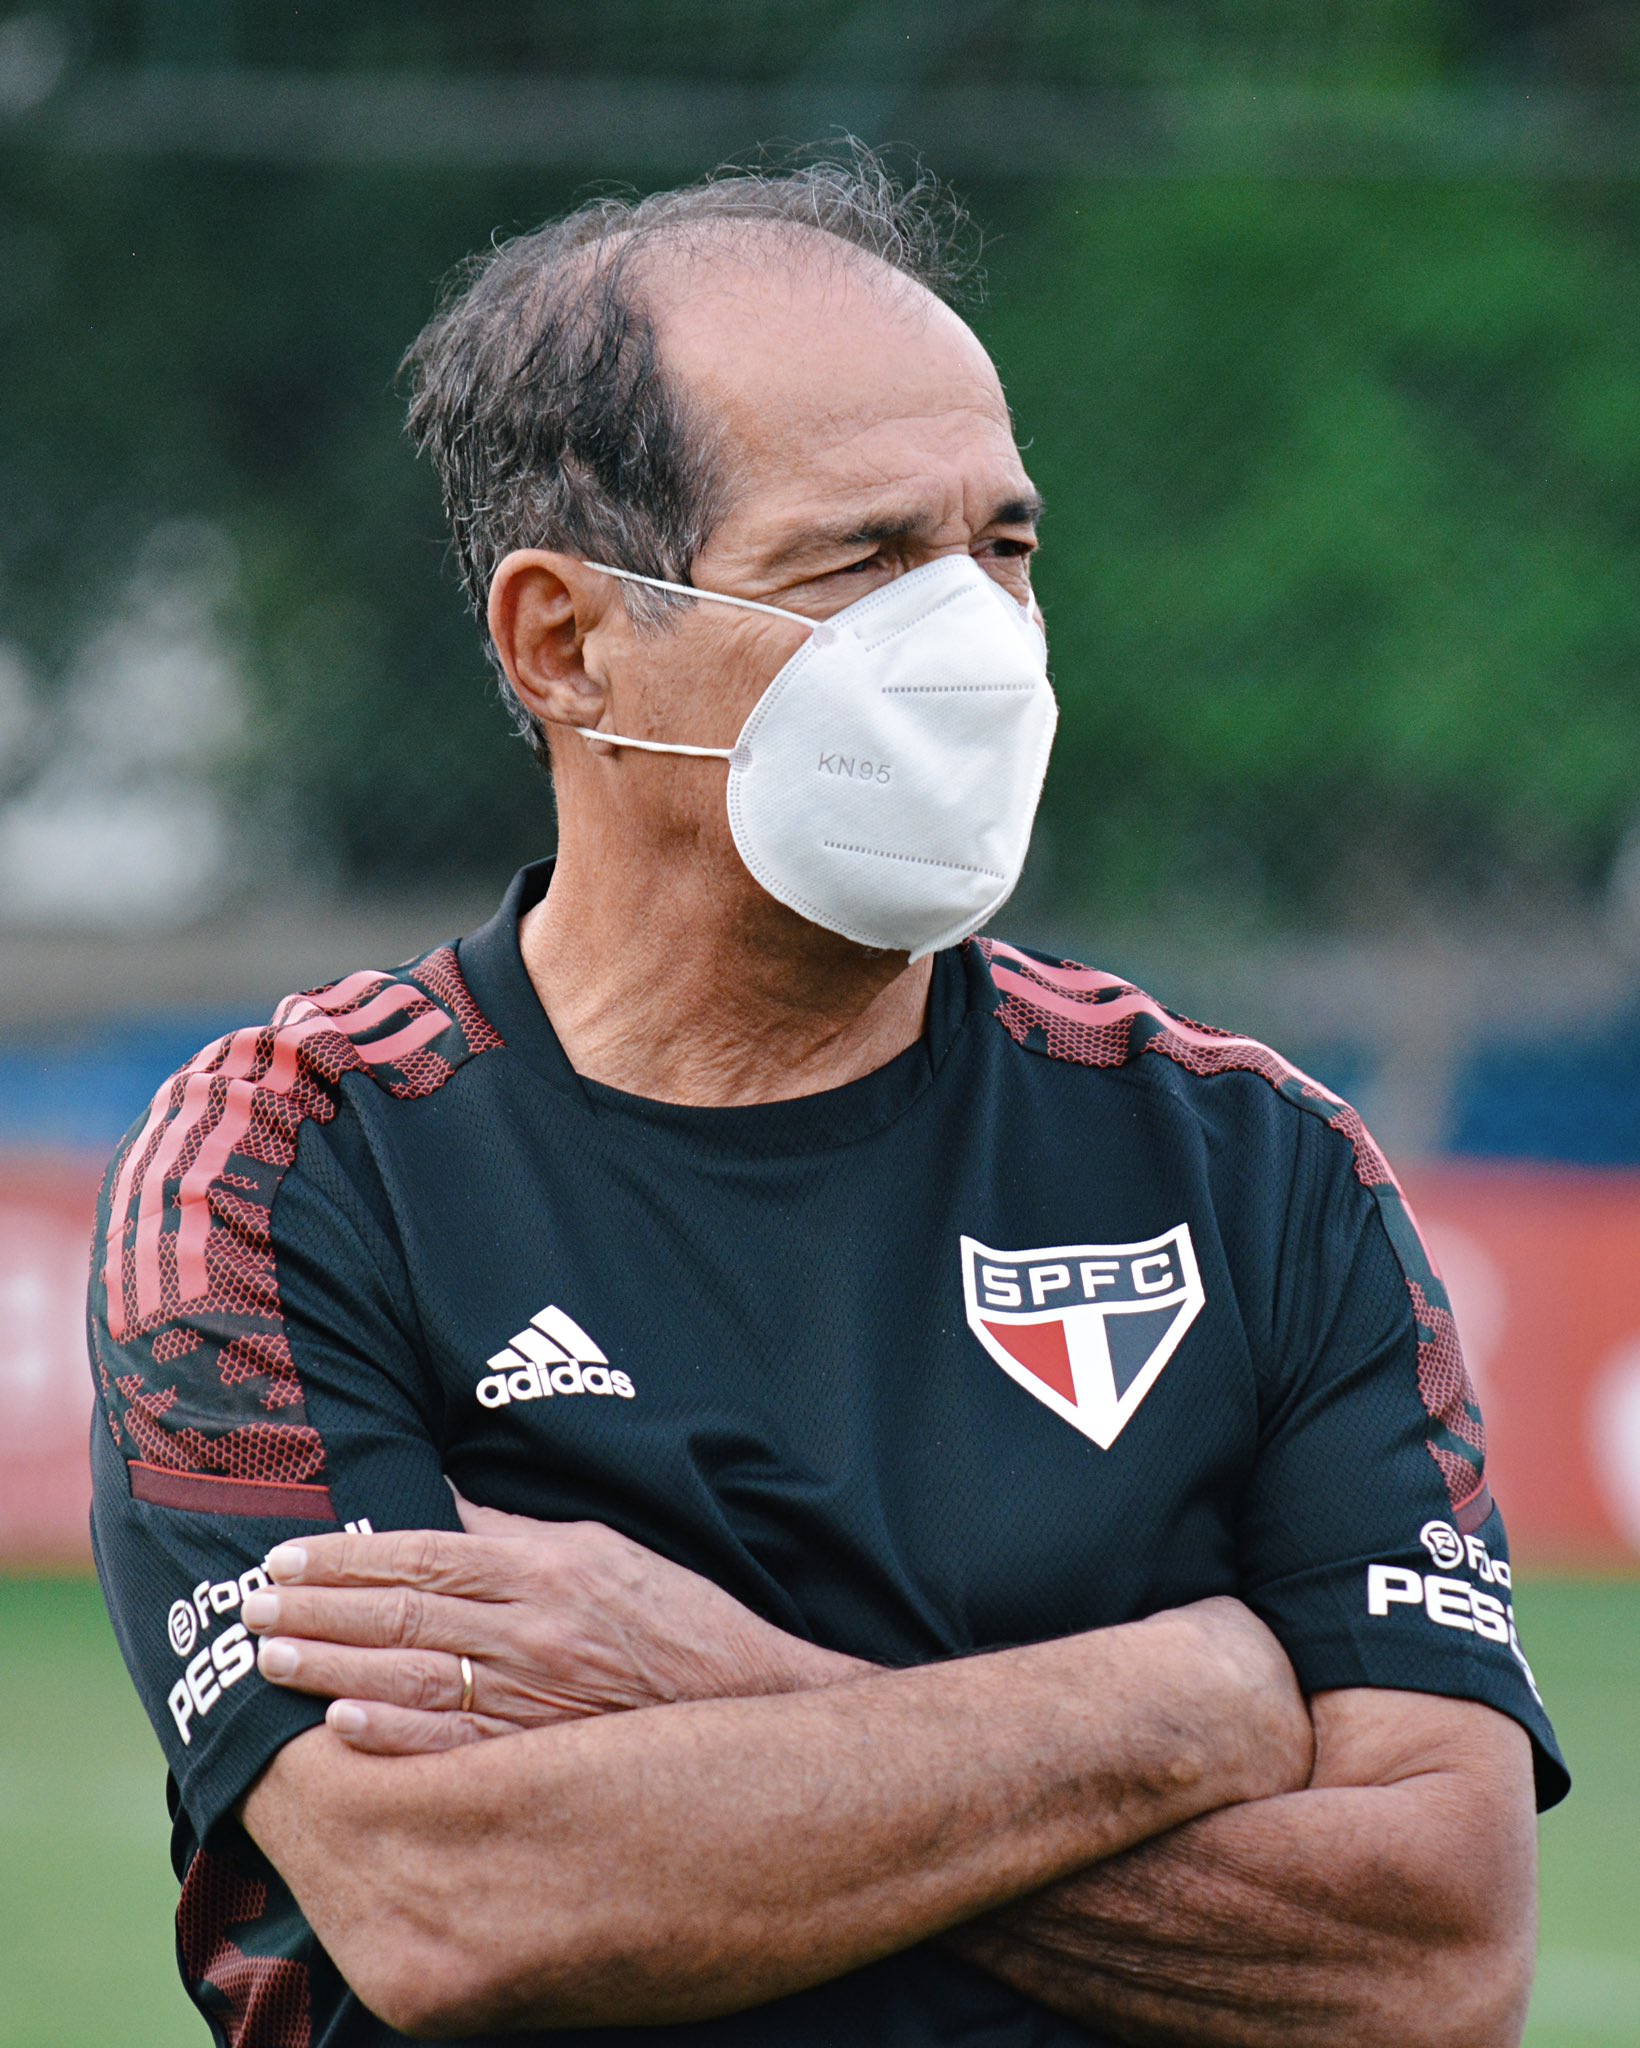 Muricy defende jogadores do São Paulo que têm sido alvos de críticas pela torcida